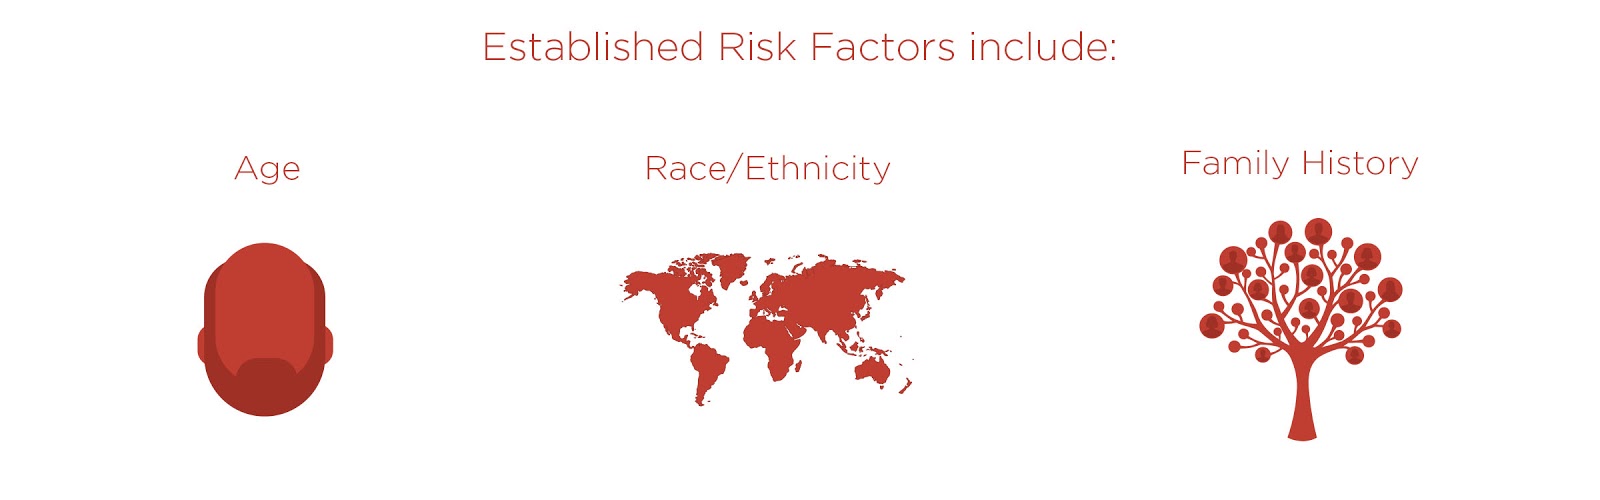 Established Risk Factors